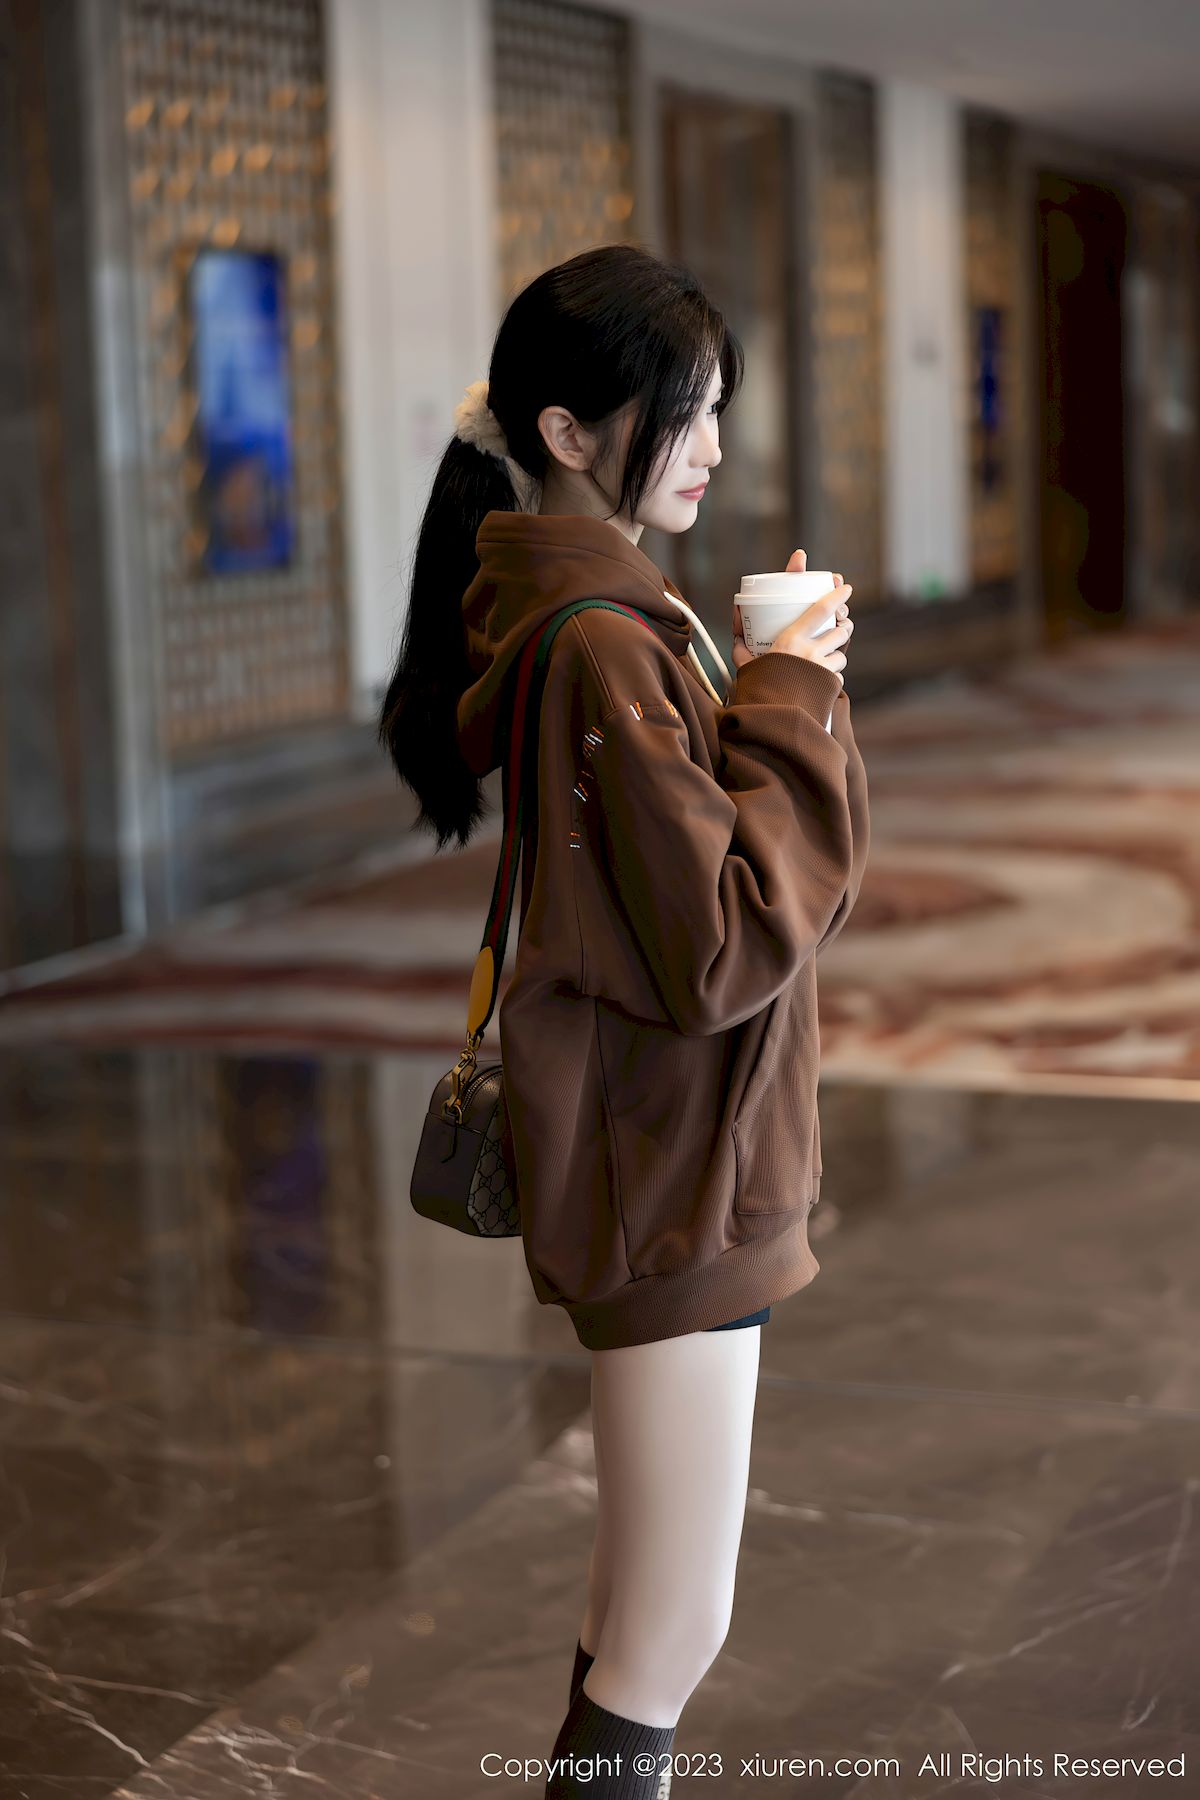 秀人网模特程程程-咖啡色卫衣搭配原色丝袜性感写真  程程程 秀人网 美女模特 丝袜美腿 第1张